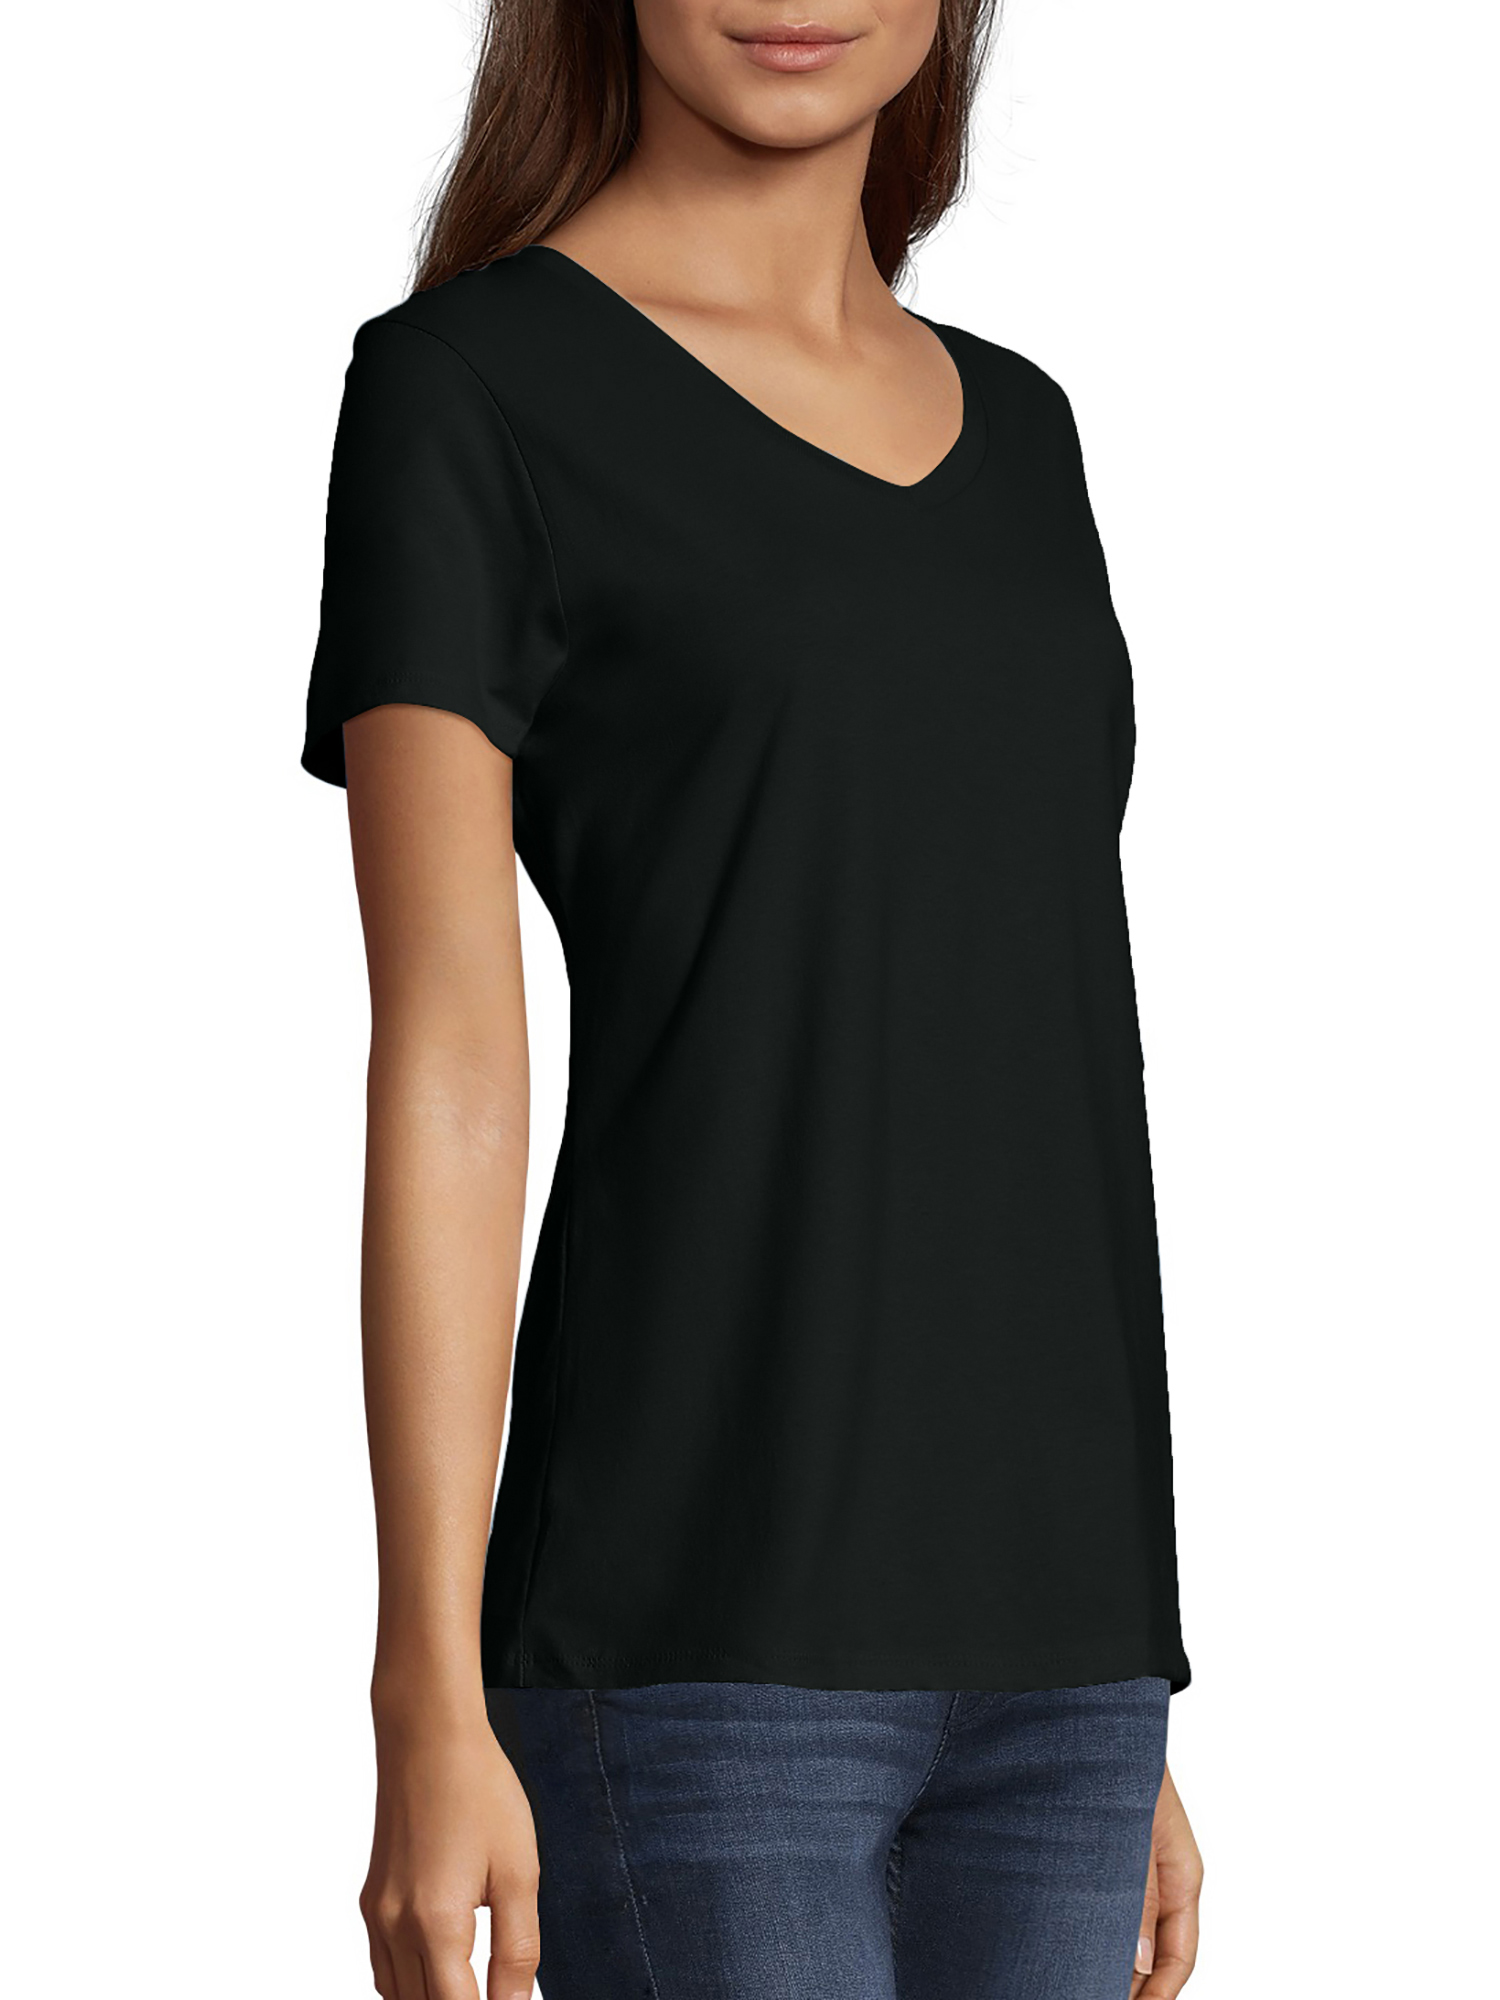 Hanes Women's Nano-T V-Neck T-Shirt - image 2 of 5